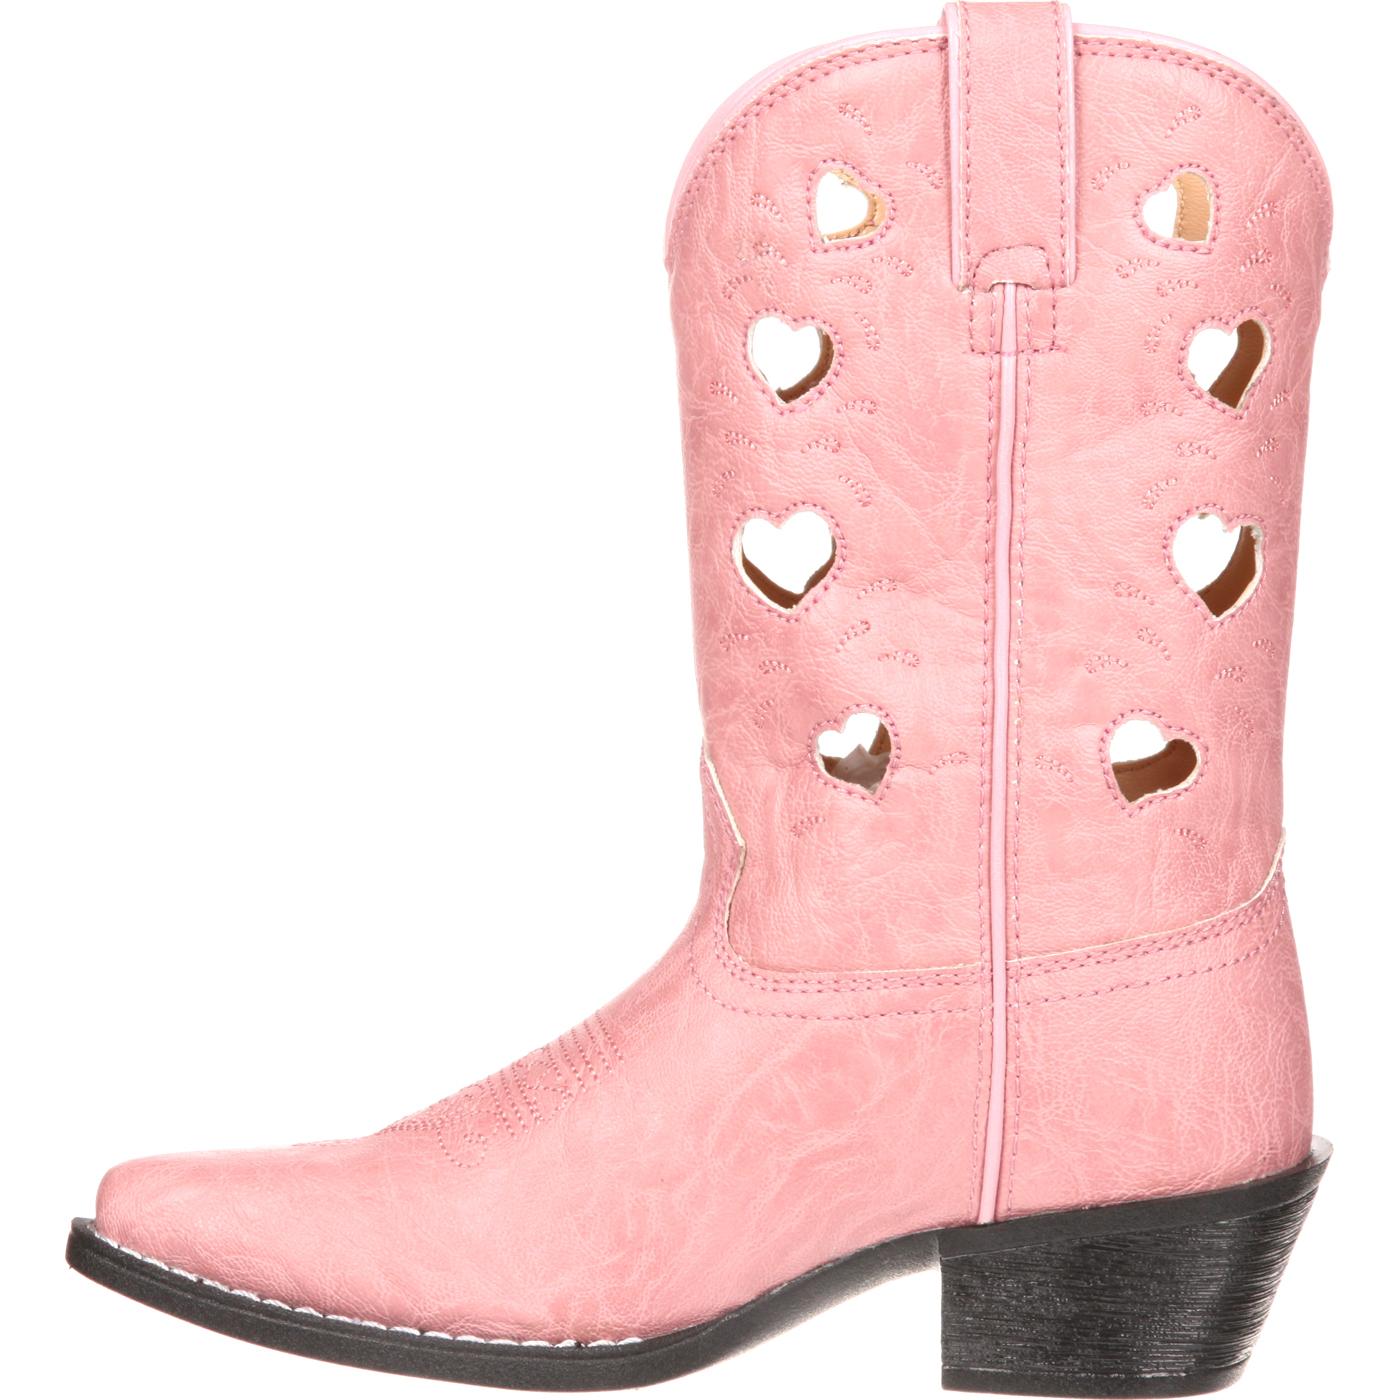 Lil' Durango Heart Cutout Pink Western Boot, DWBT105